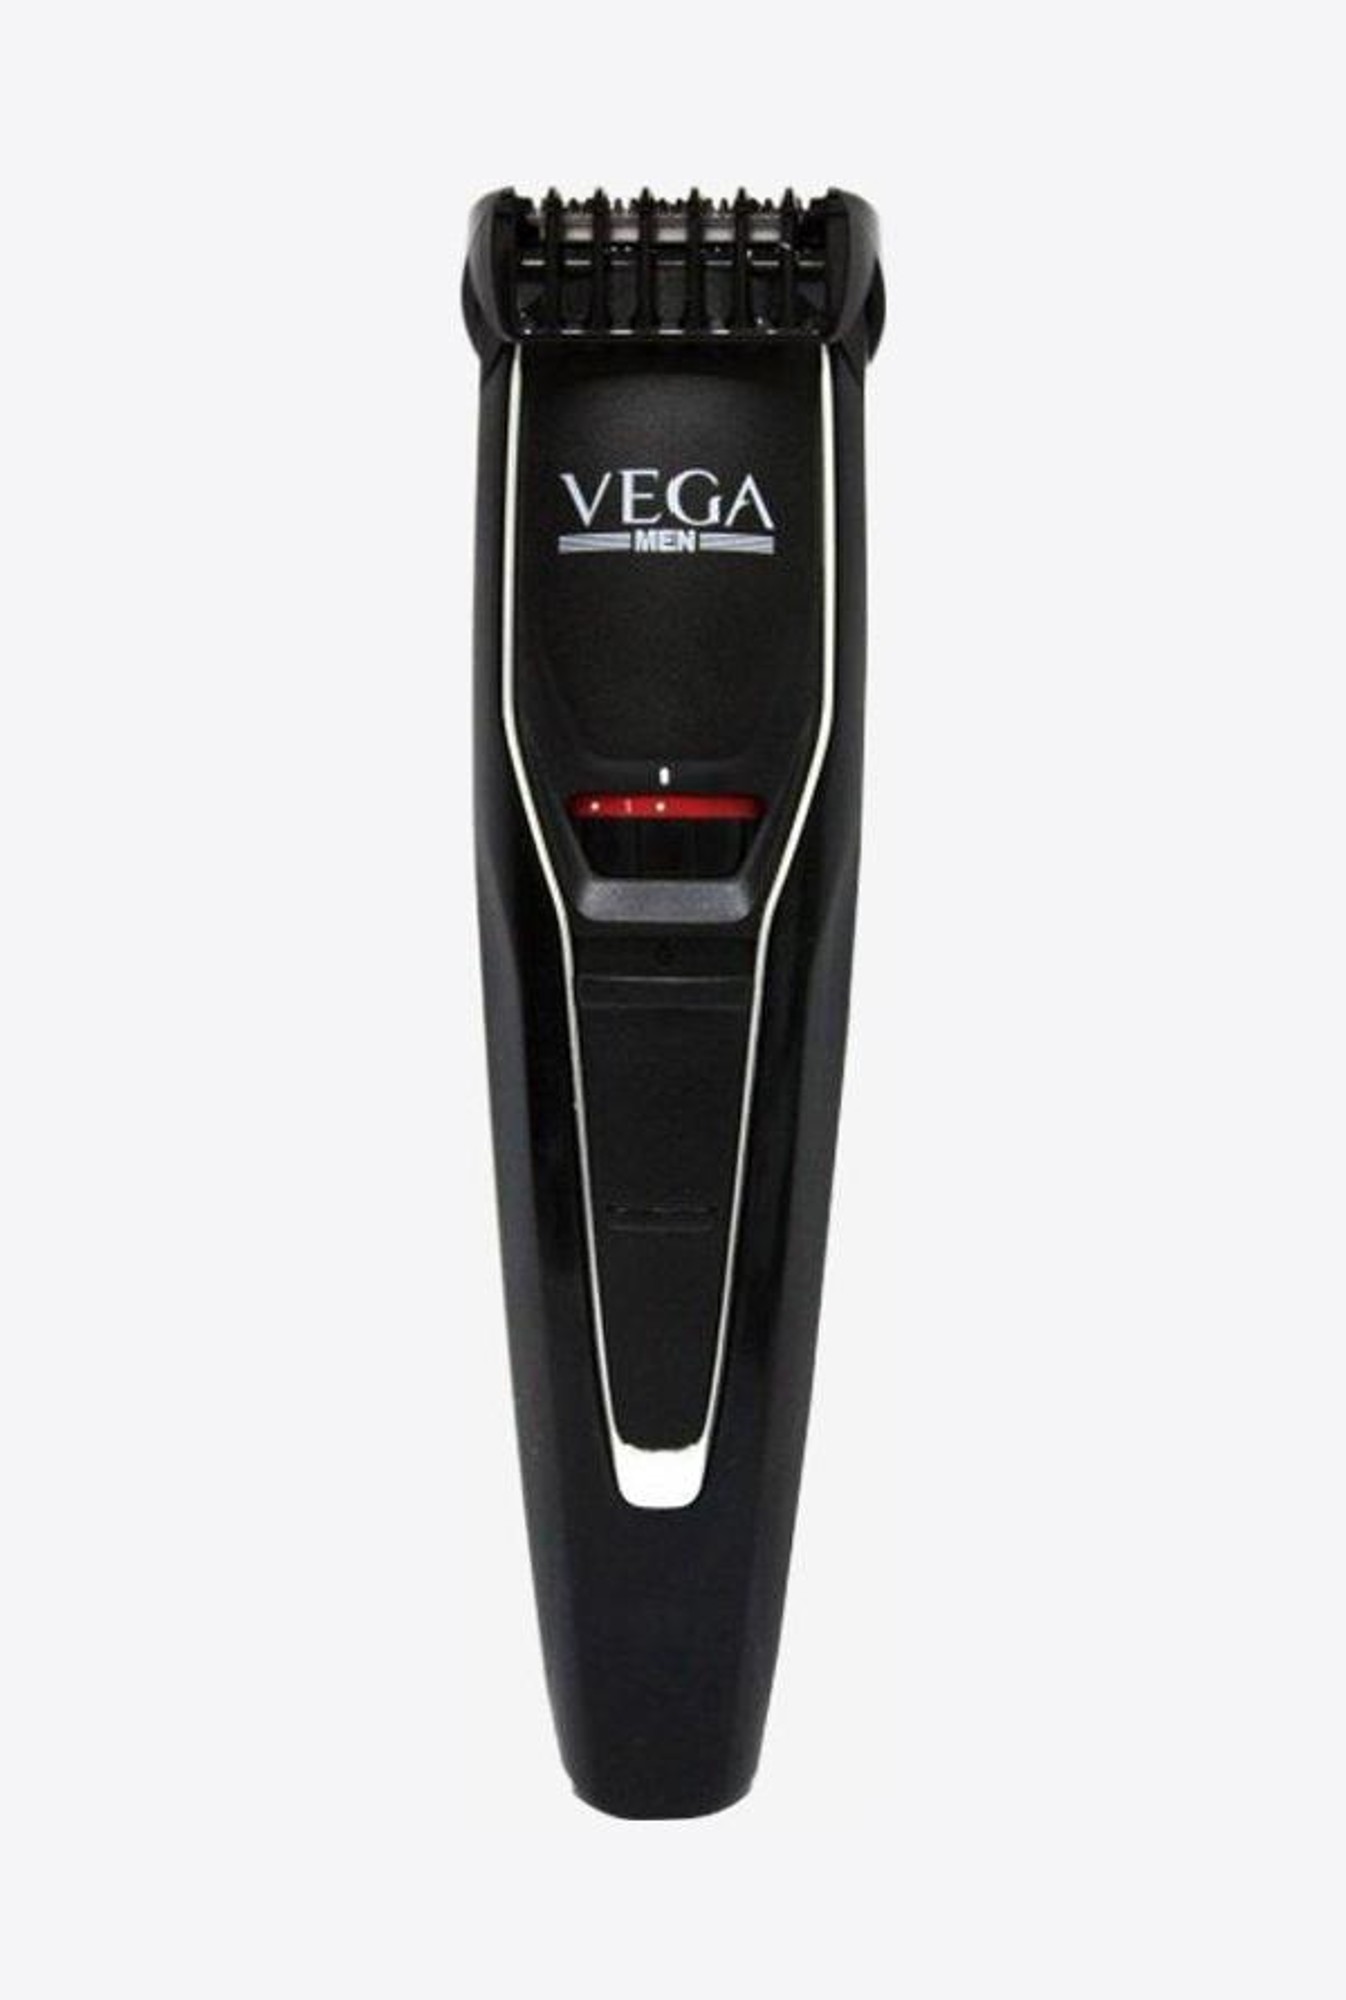 vega hair trimmer